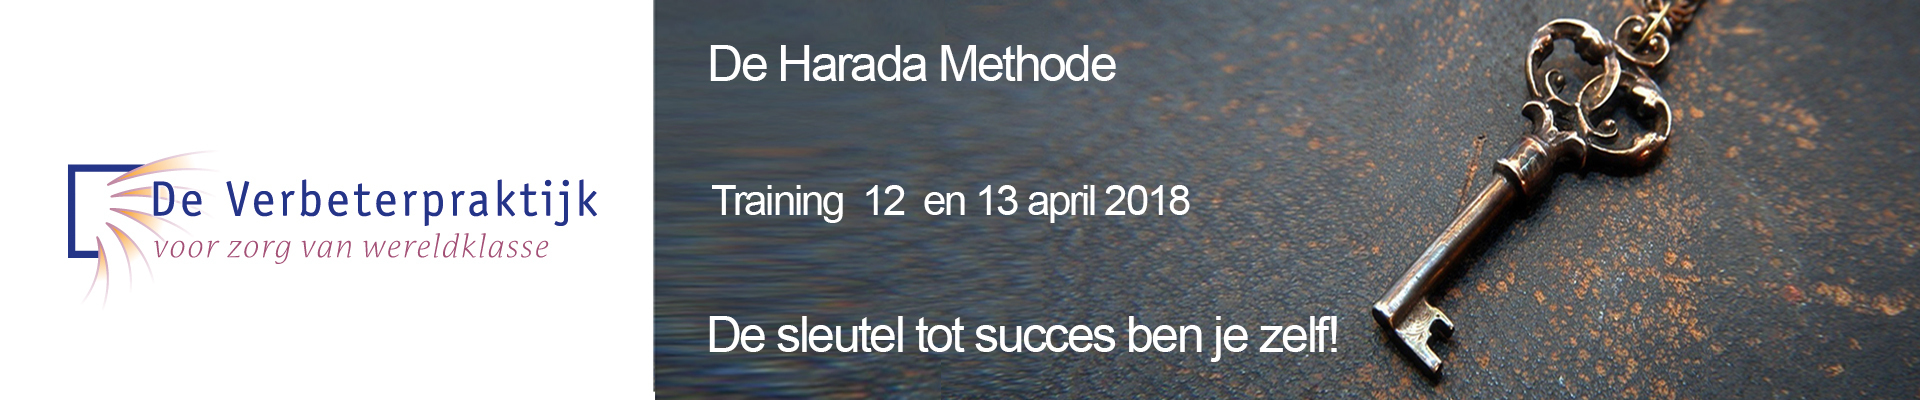 Harada training verwijderen